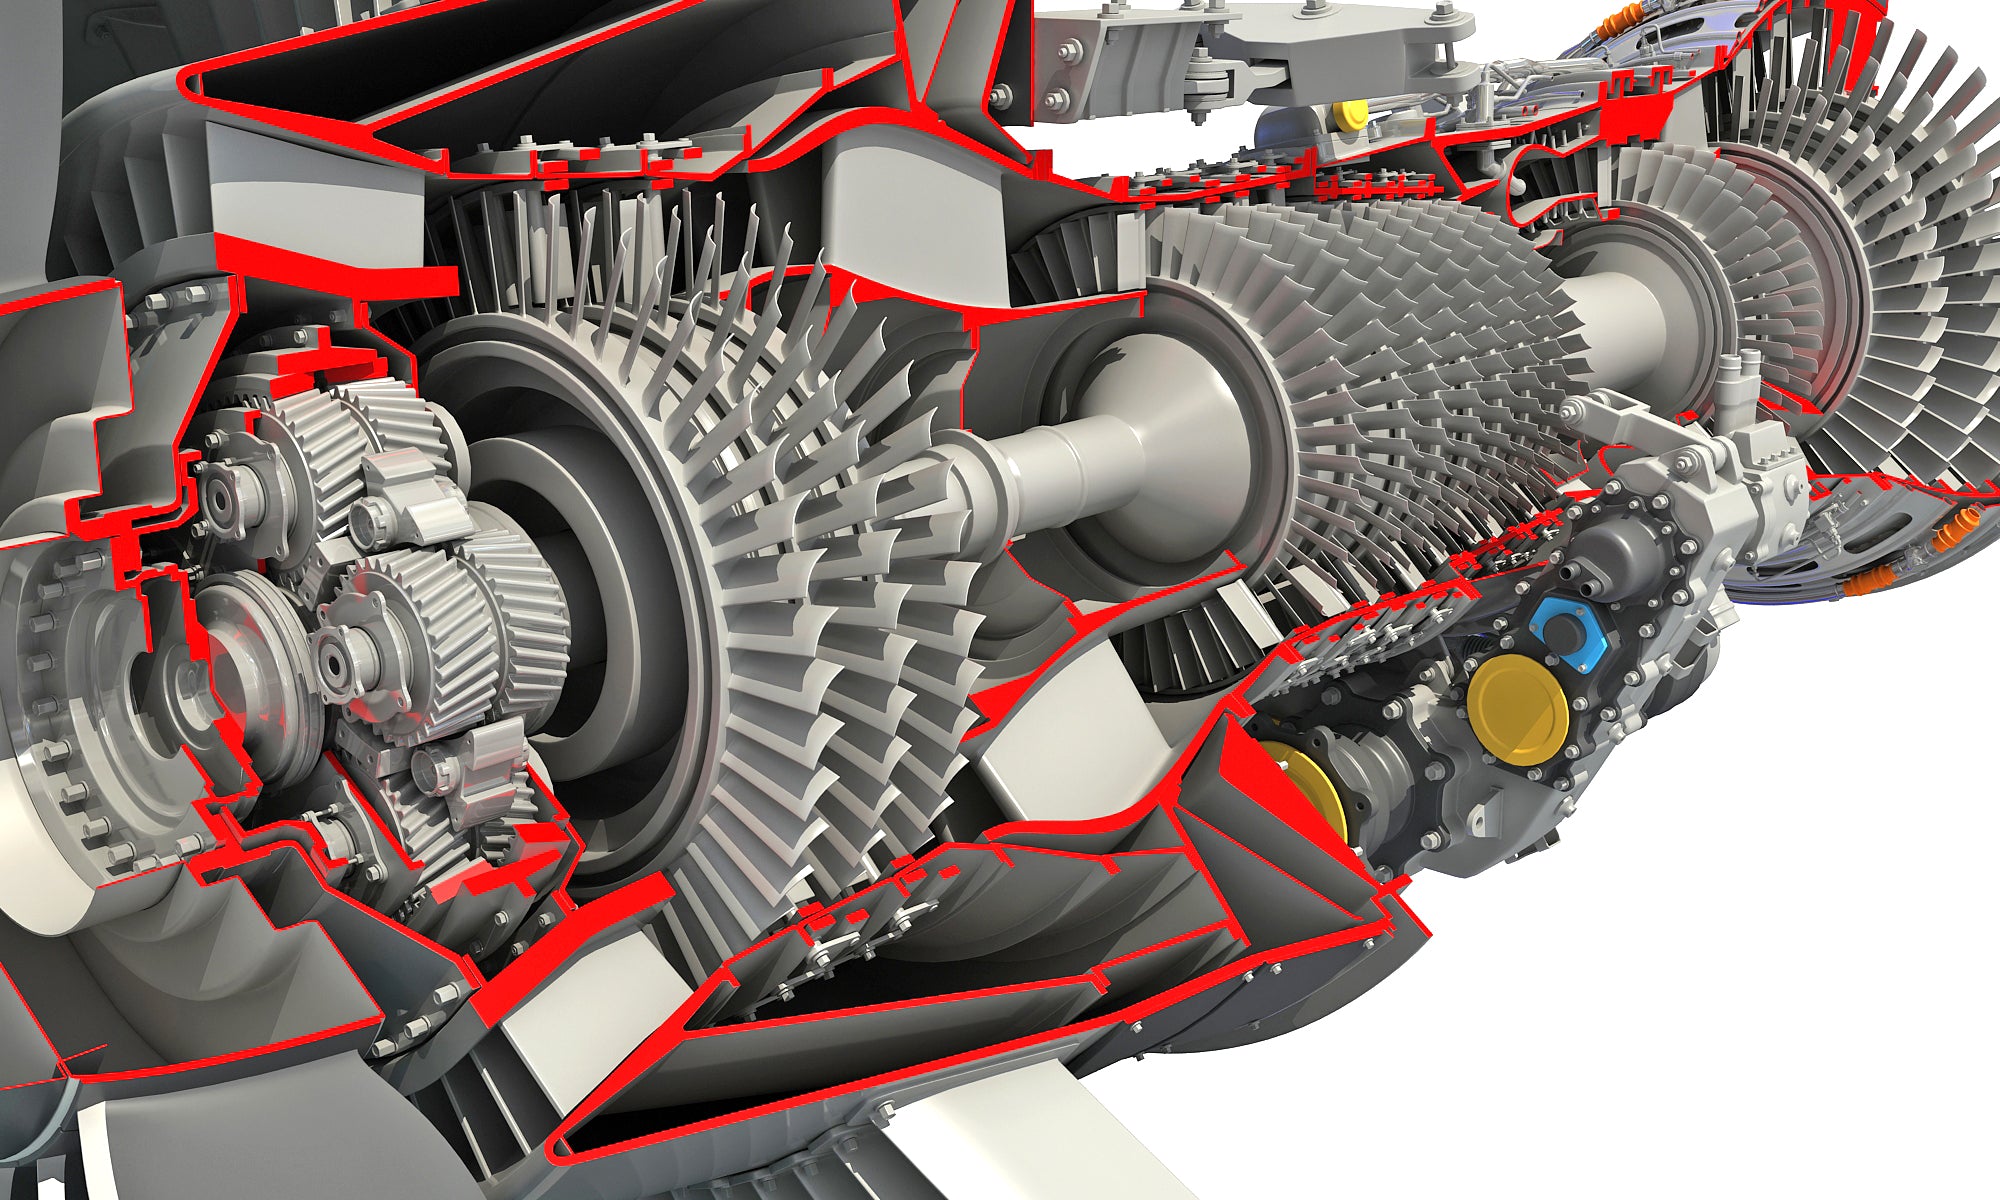 Full and Cutaway GTF Turbofan Engine